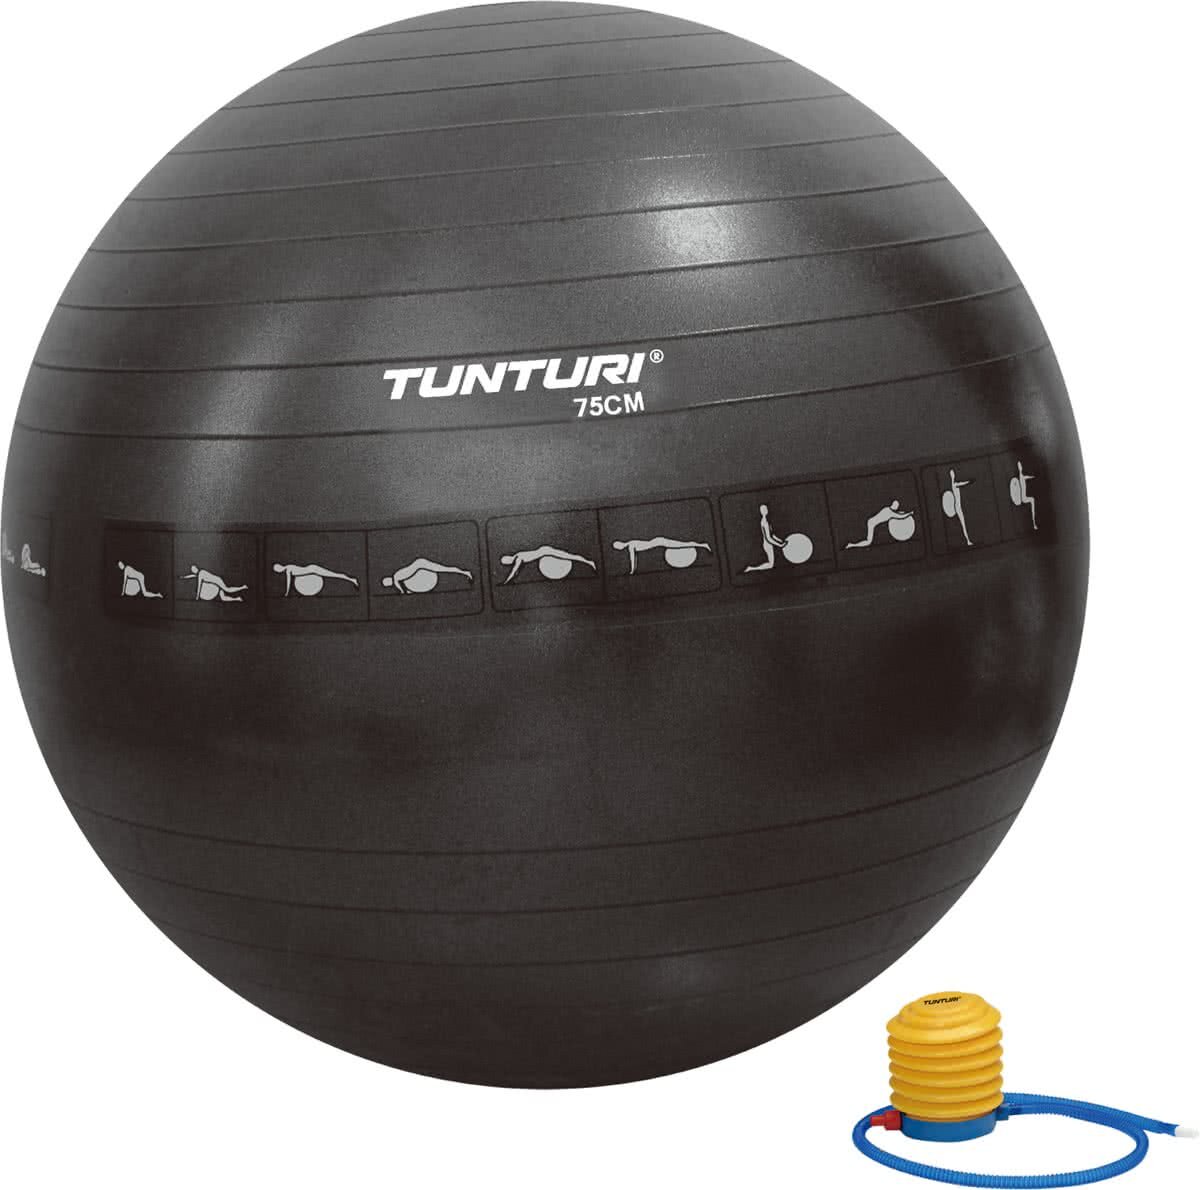 Tunturi Tunturi Anti-Burst Fitnessbal 75cm